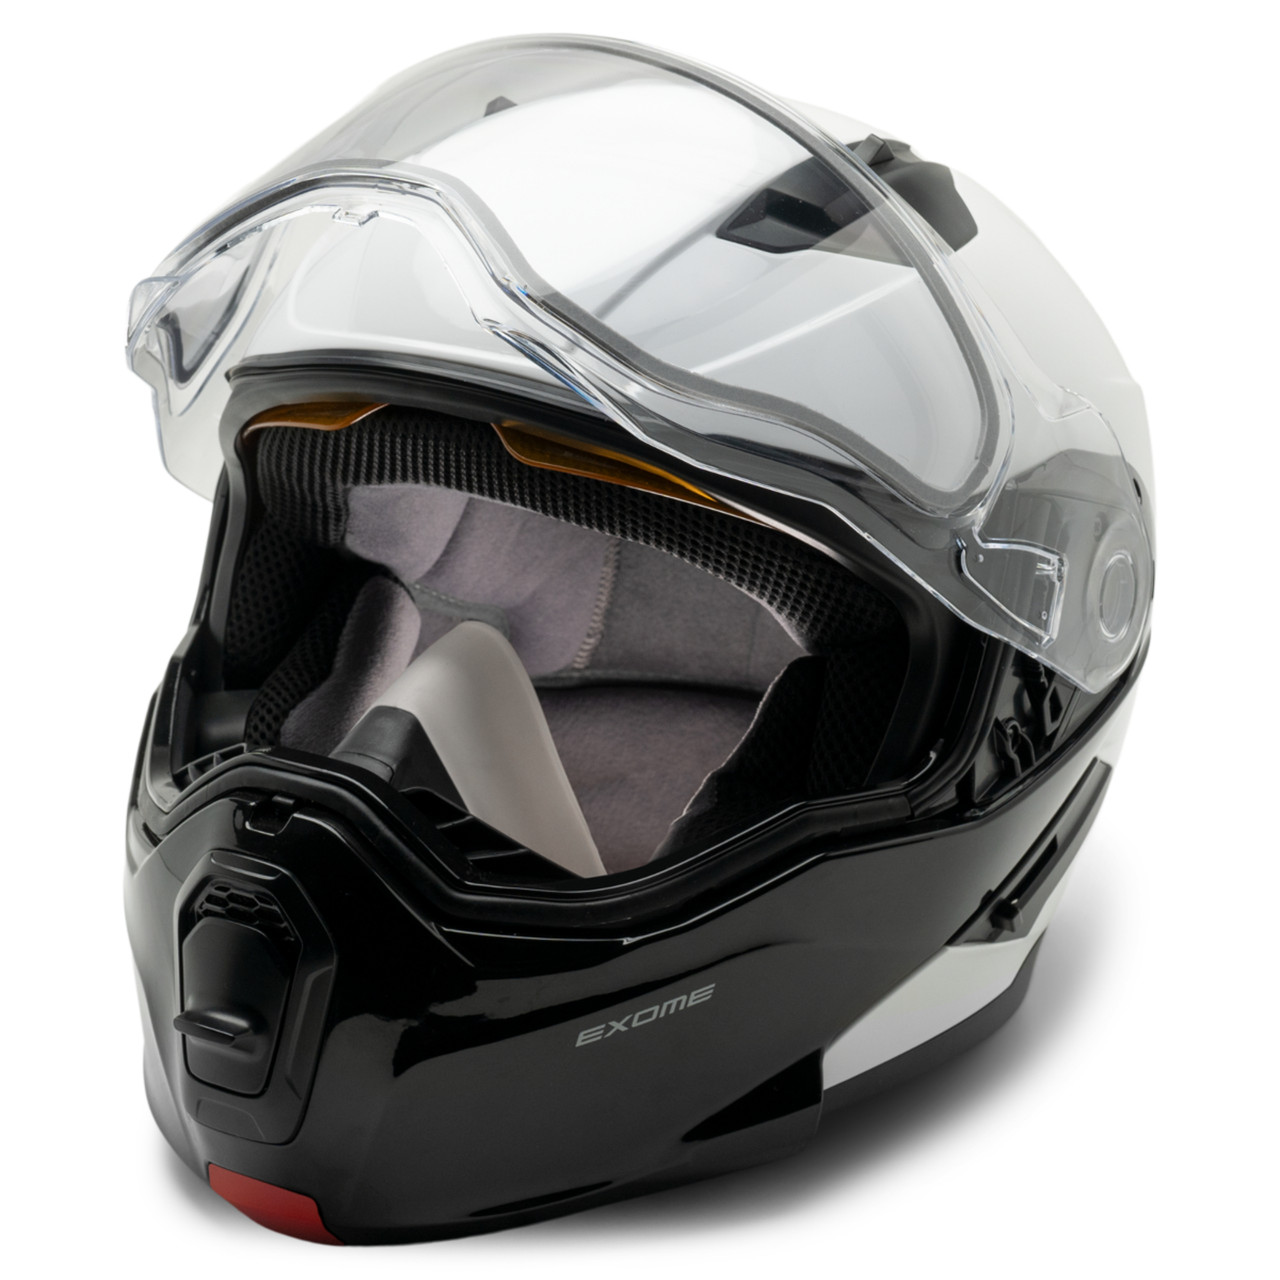 Ski-Doo New OEM Exome Helmet (DOT), Unisex Small, 9290740401